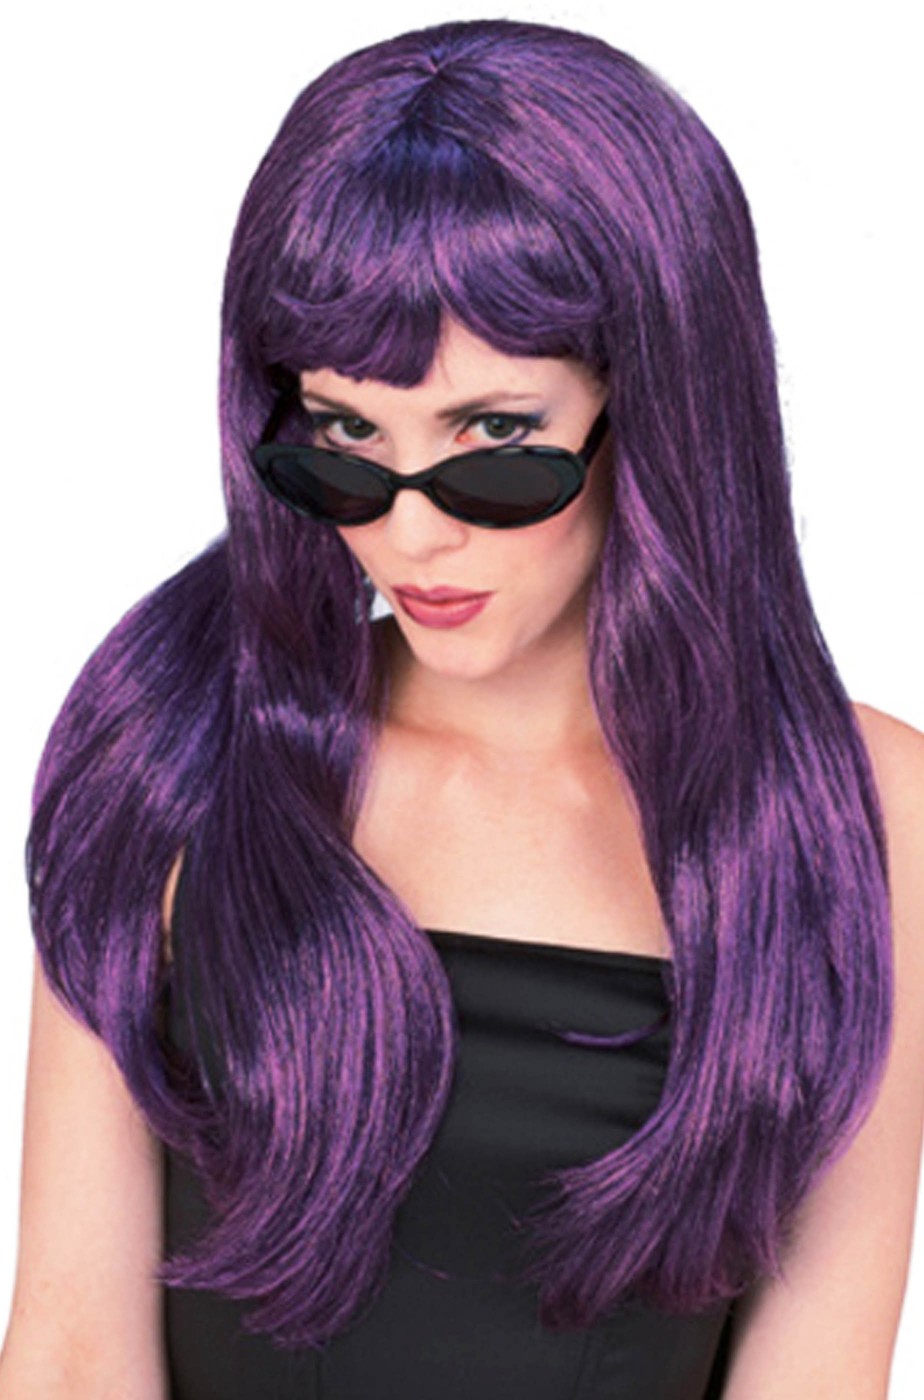 Parrucca donna viola/nera lunga liscia con frangia